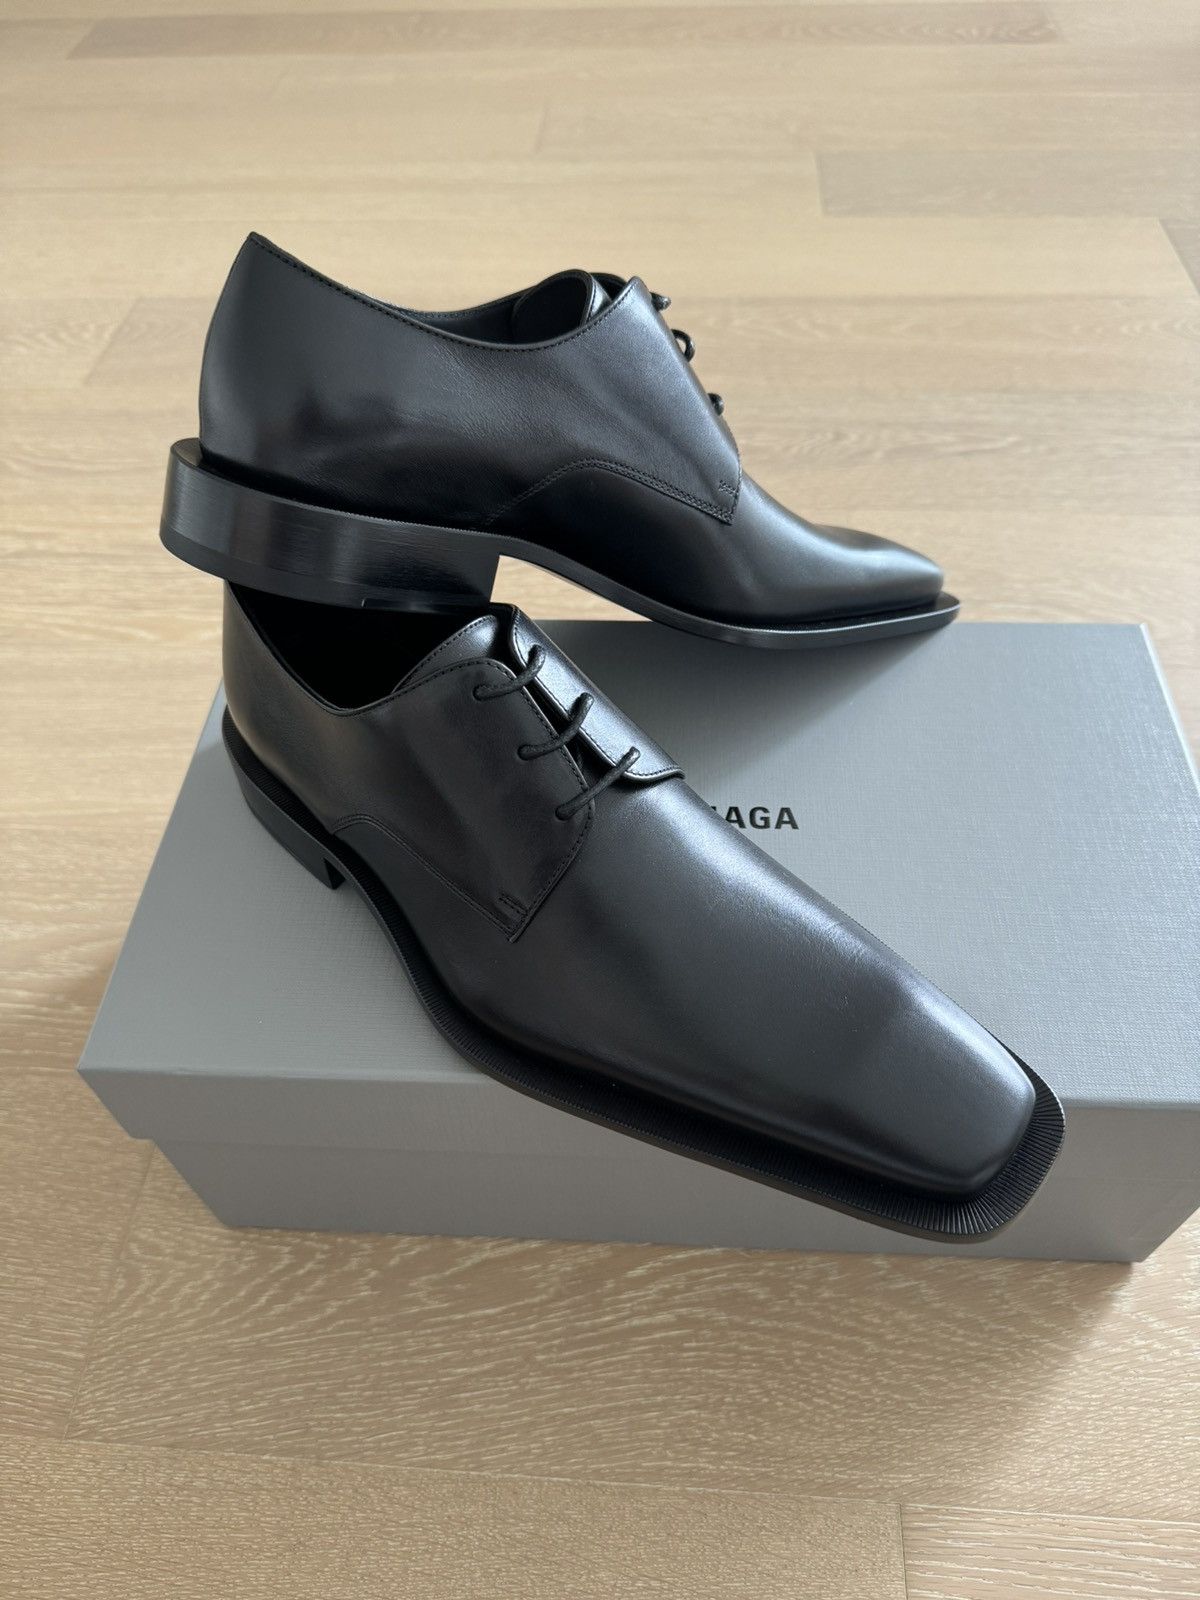 Balenciaga Last price - Balenciaga Miami Derby L20 Leather Shoes Black |  Grailed